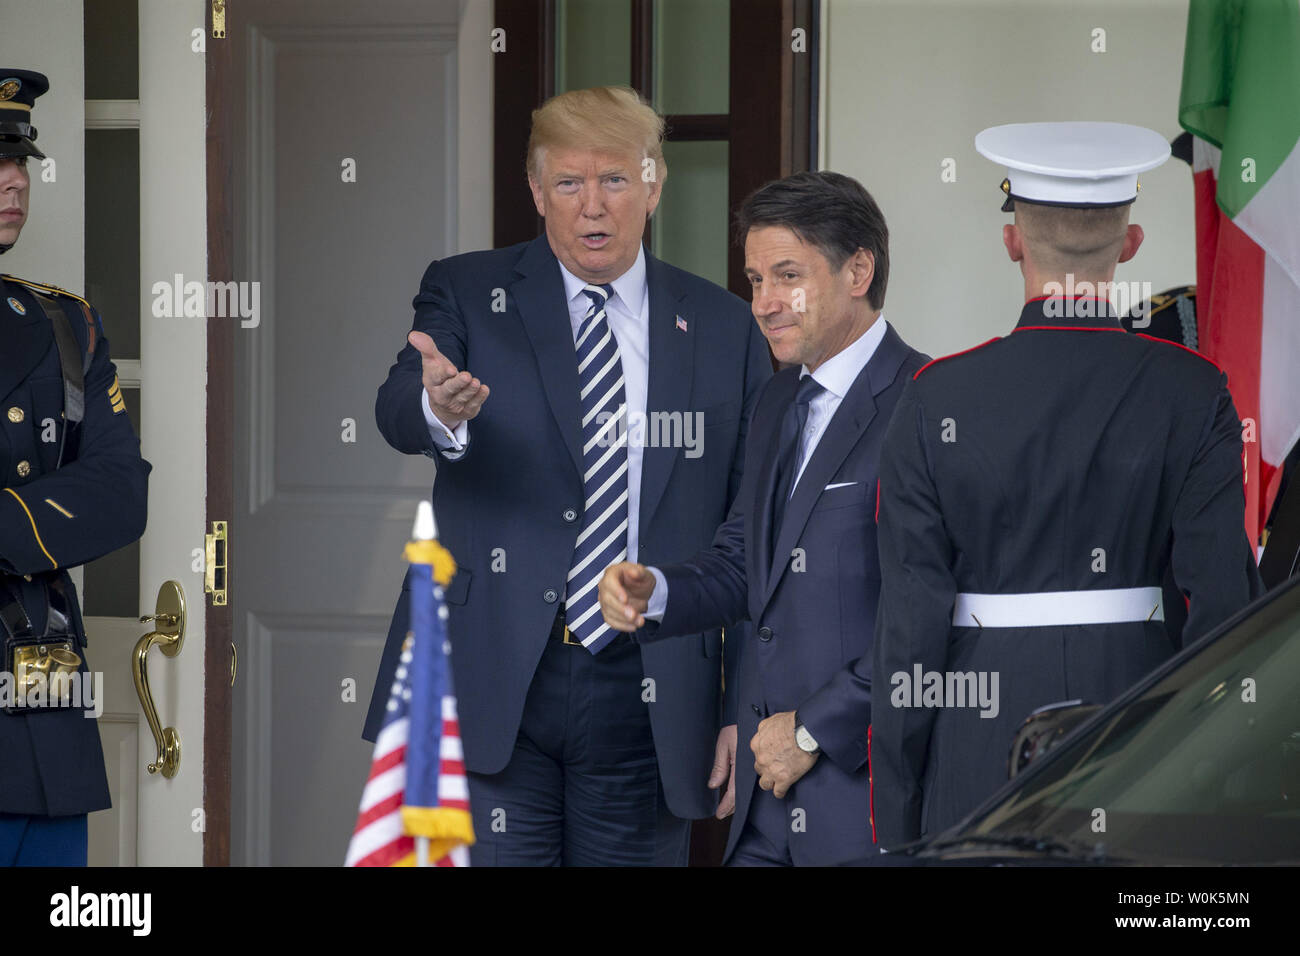 U.S presidente Donald Trump giganti del Primo Ministro della Repubblica italiana Giuseppe Conte alla Casa Bianca sulla luglio 30, 2018 a Washington DC. Foto di Tasos Katopodis/UPI Foto Stock